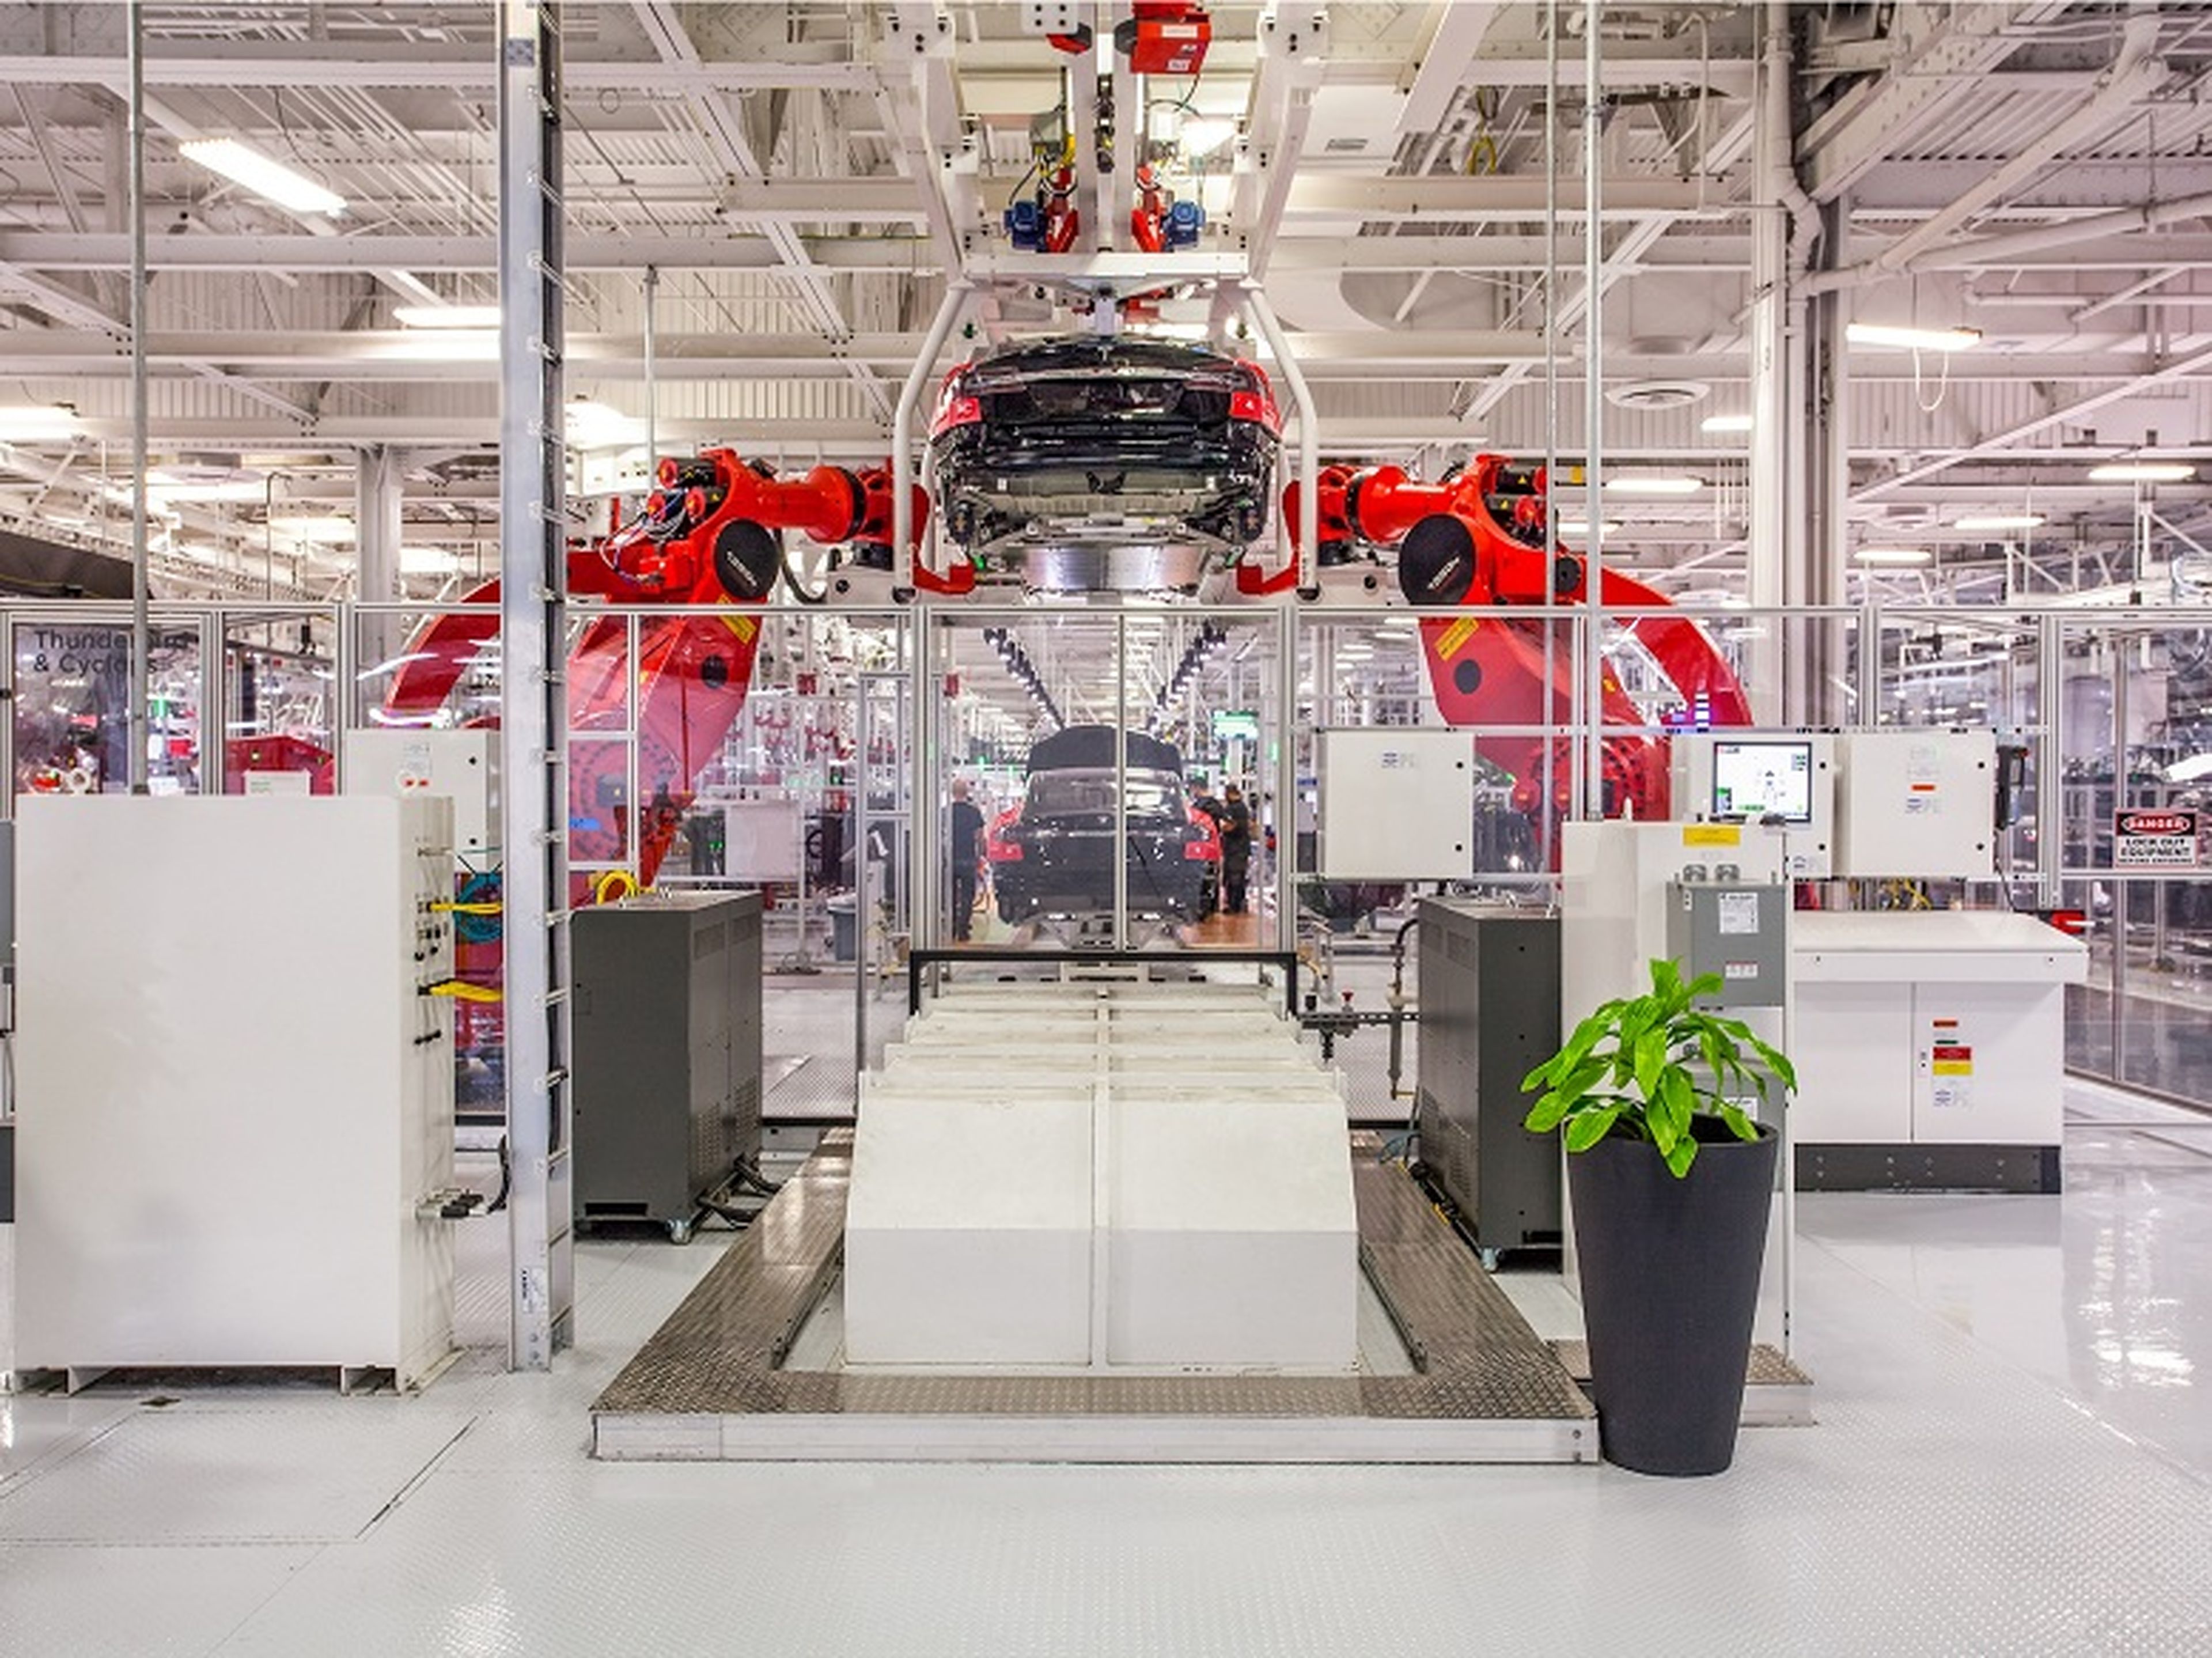 El empleado de Tesla habría cambiado partes del sistema operativo de fabricación de la compañía y habría filtrado información sensible, según habría comunicado Elon Musk.